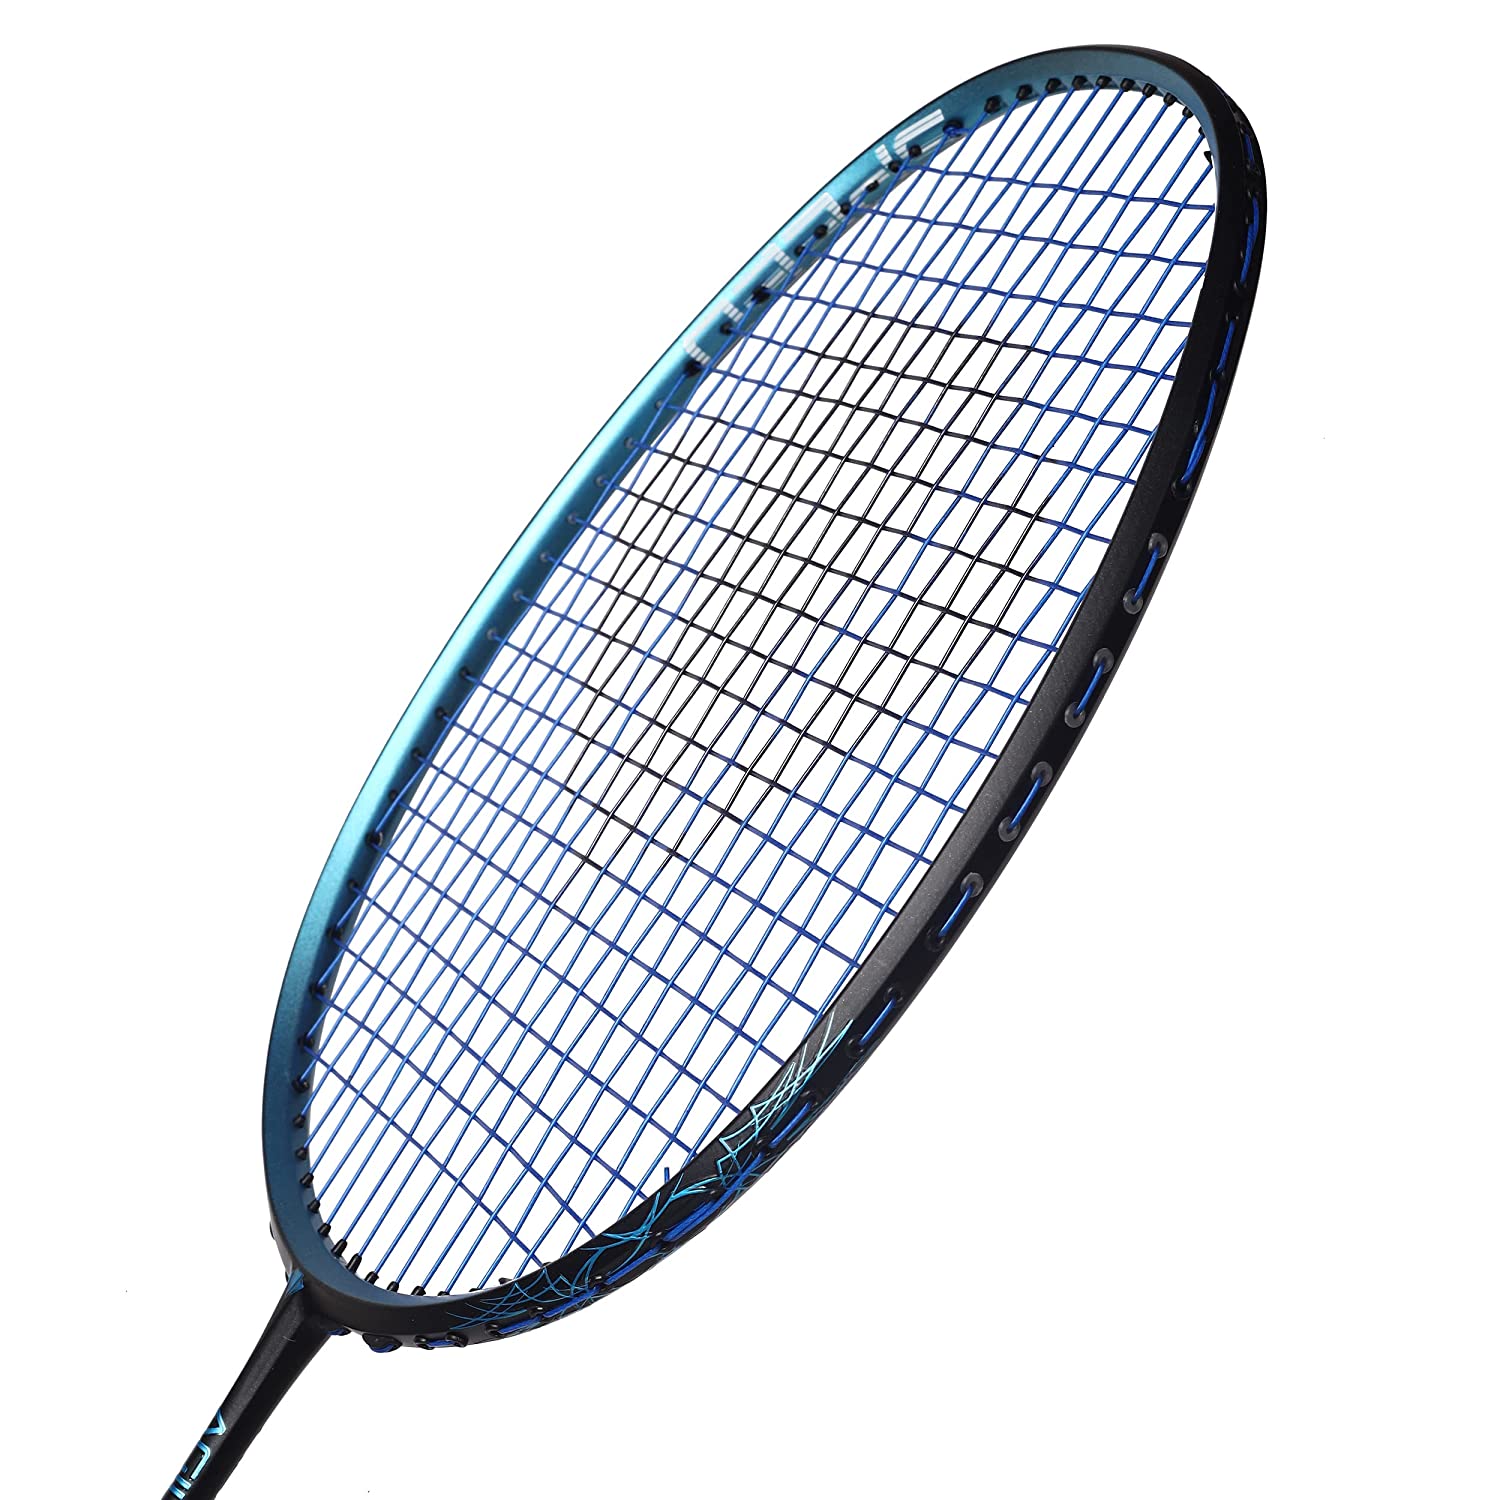 Carlton Agile 600 Strung Badminton Racket